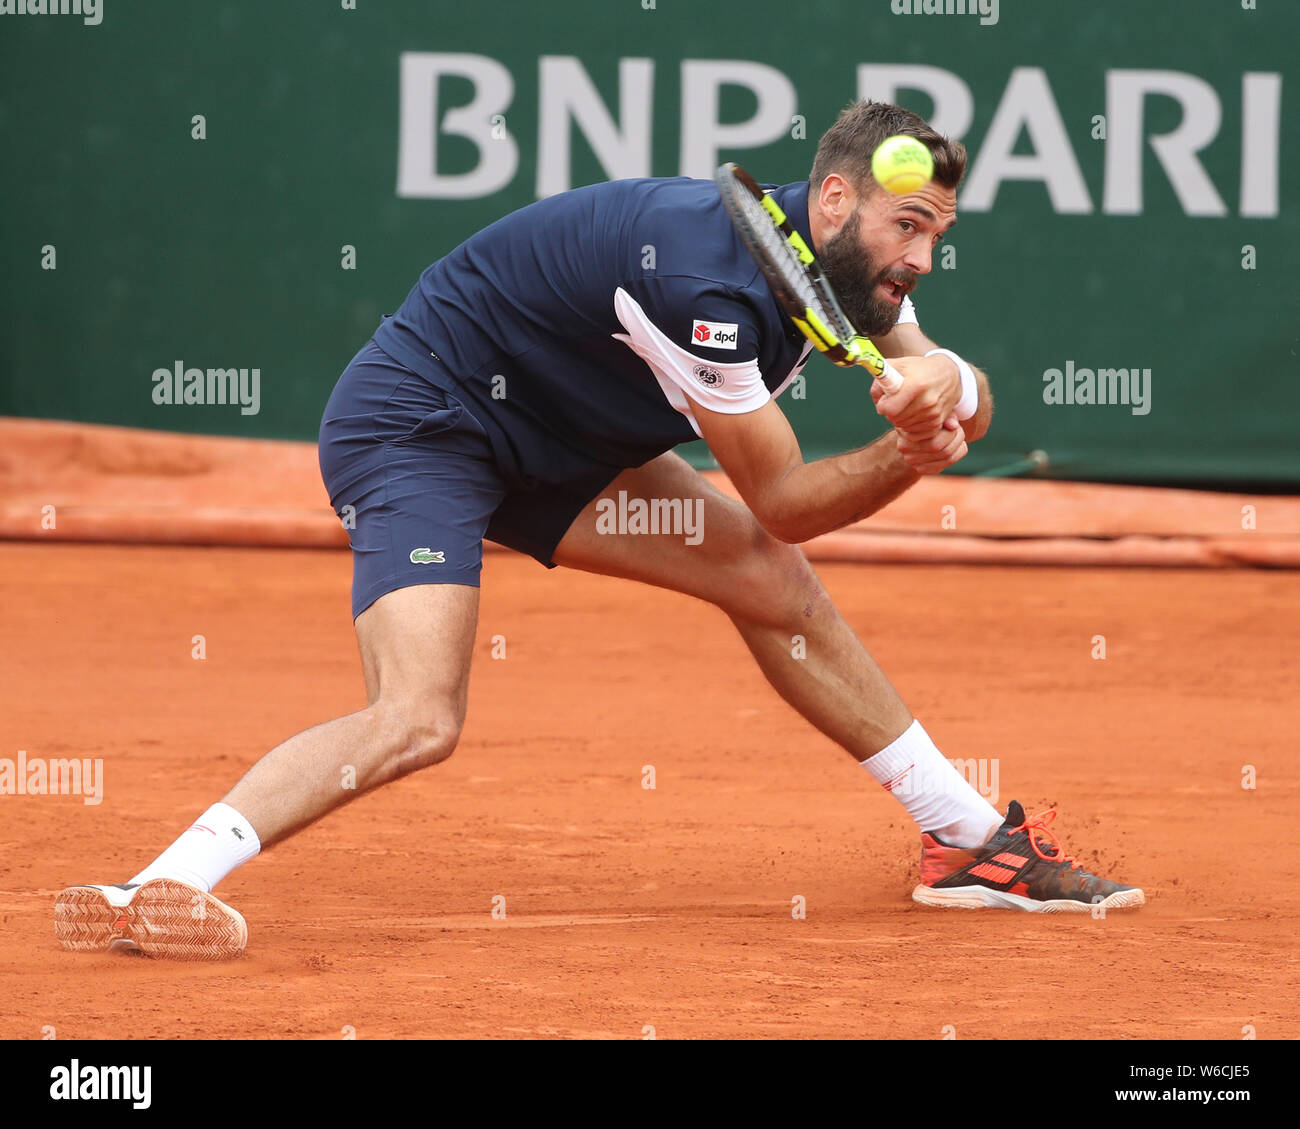 Französischen Tennisspieler Benoit Paire spielen Rückhand geschossen im French Open 2019 Tennis Turnier, Paris, Frankreich Stockfoto